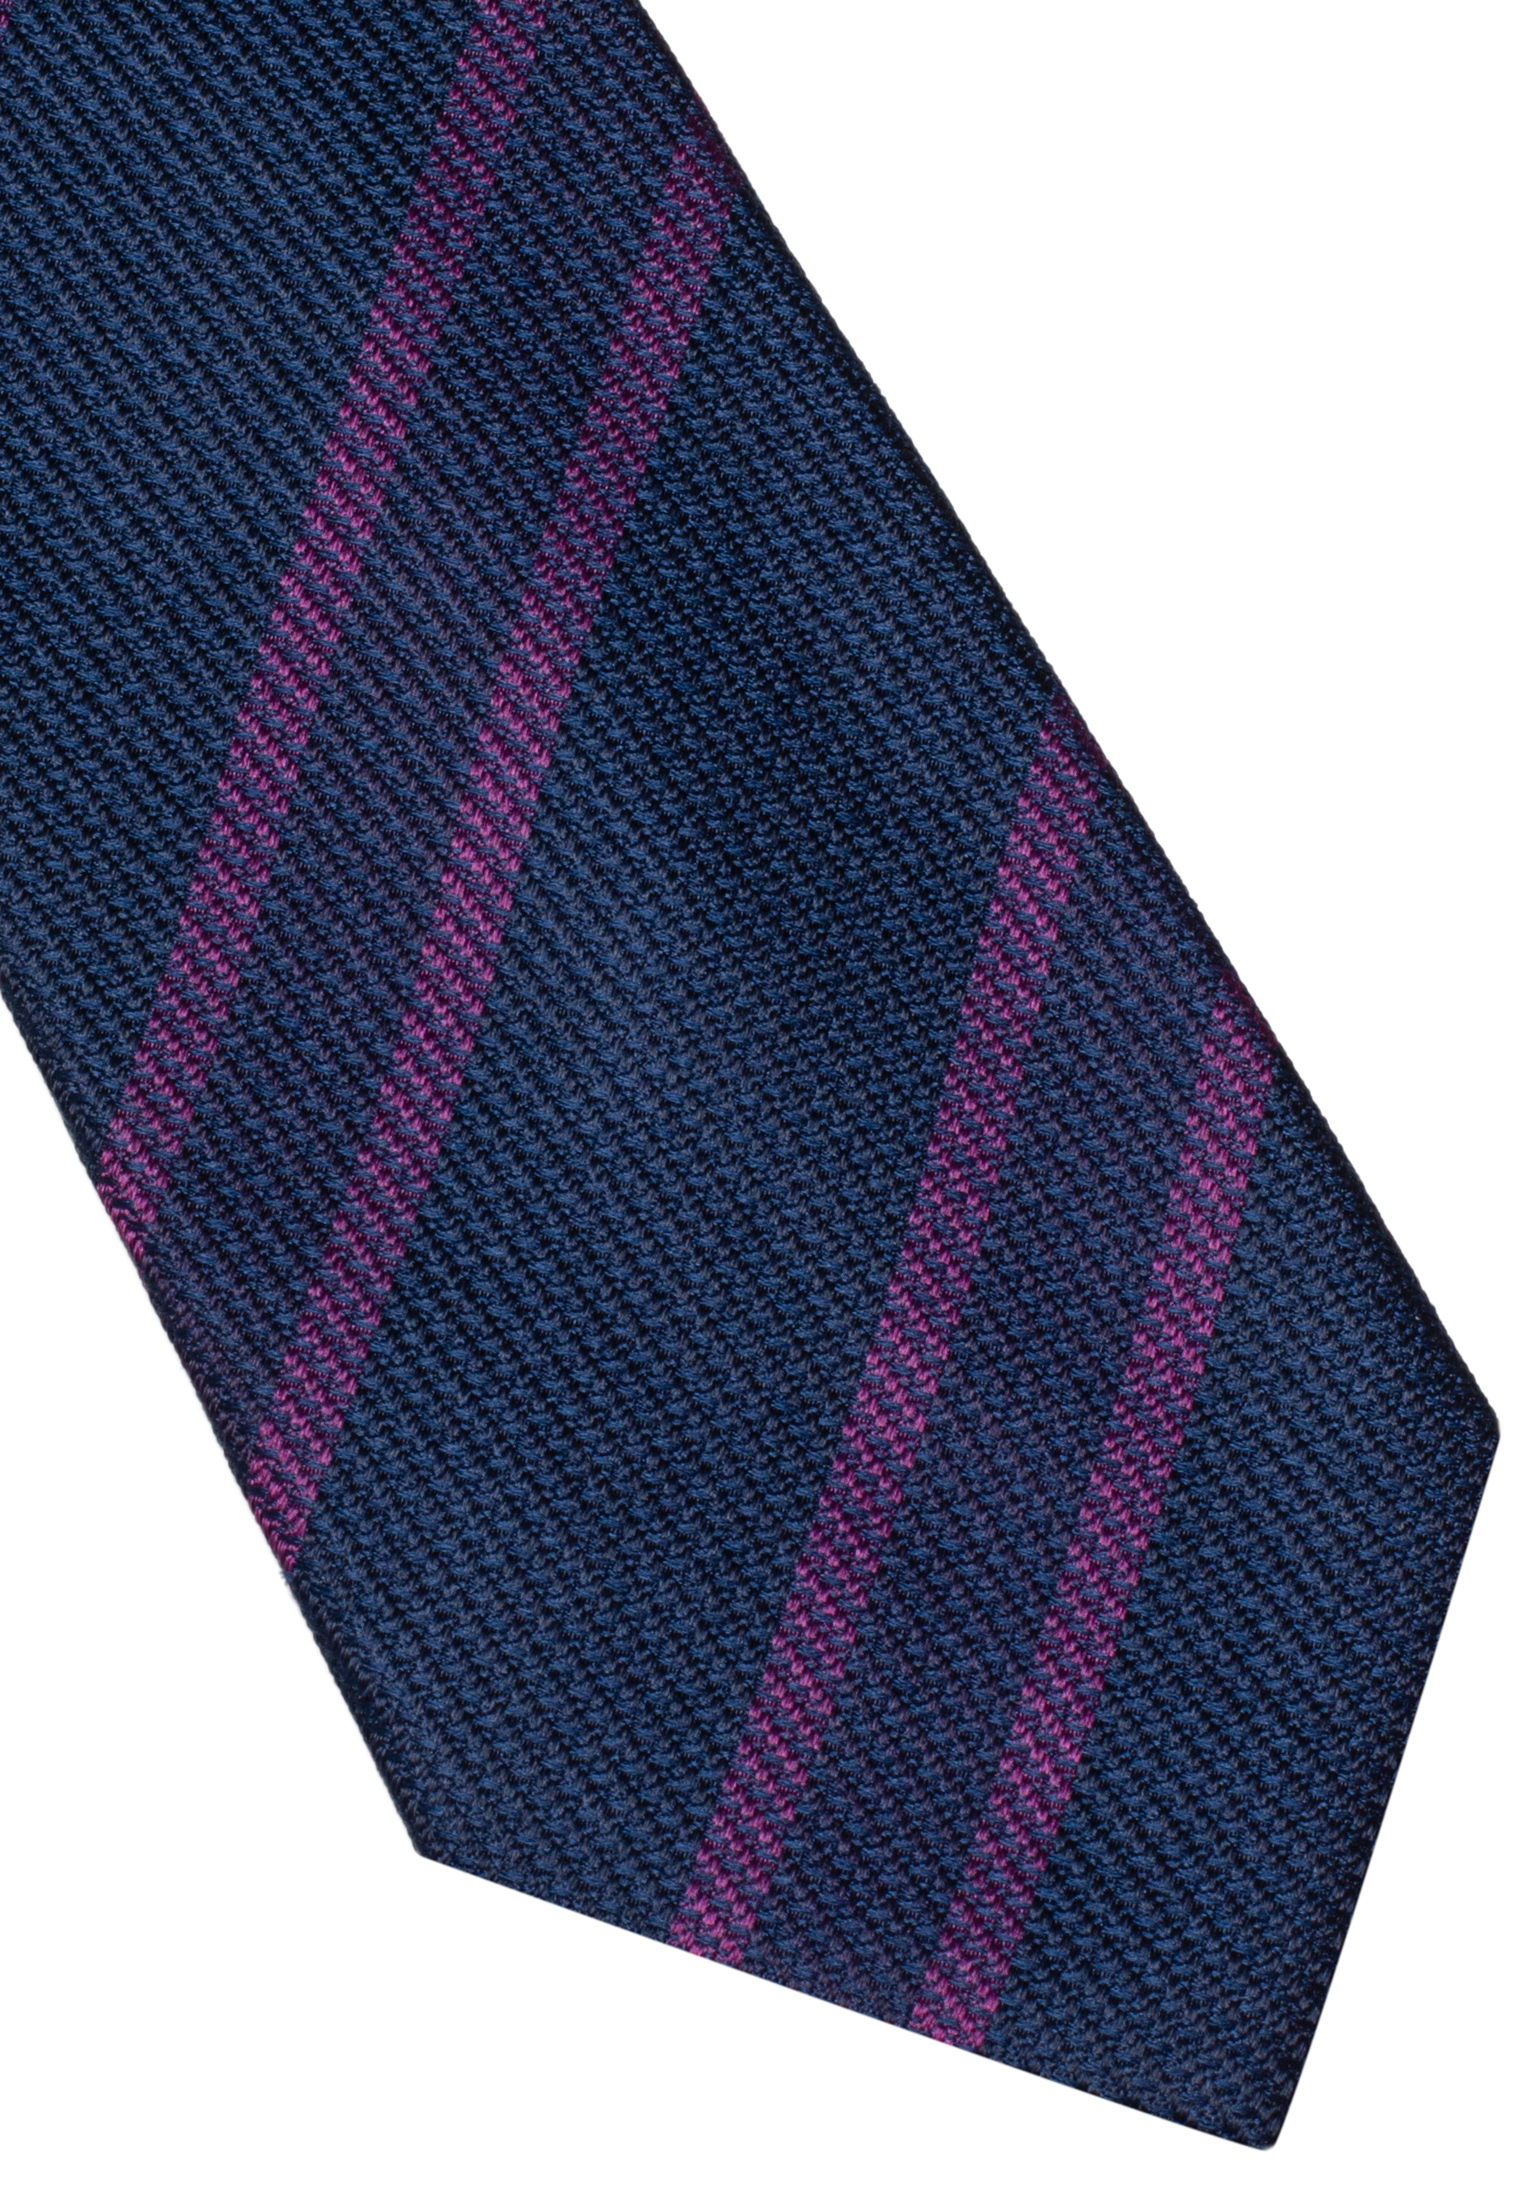 Krawatte in lila gestreift | lila | 142 | 1AC00360-09-01-142